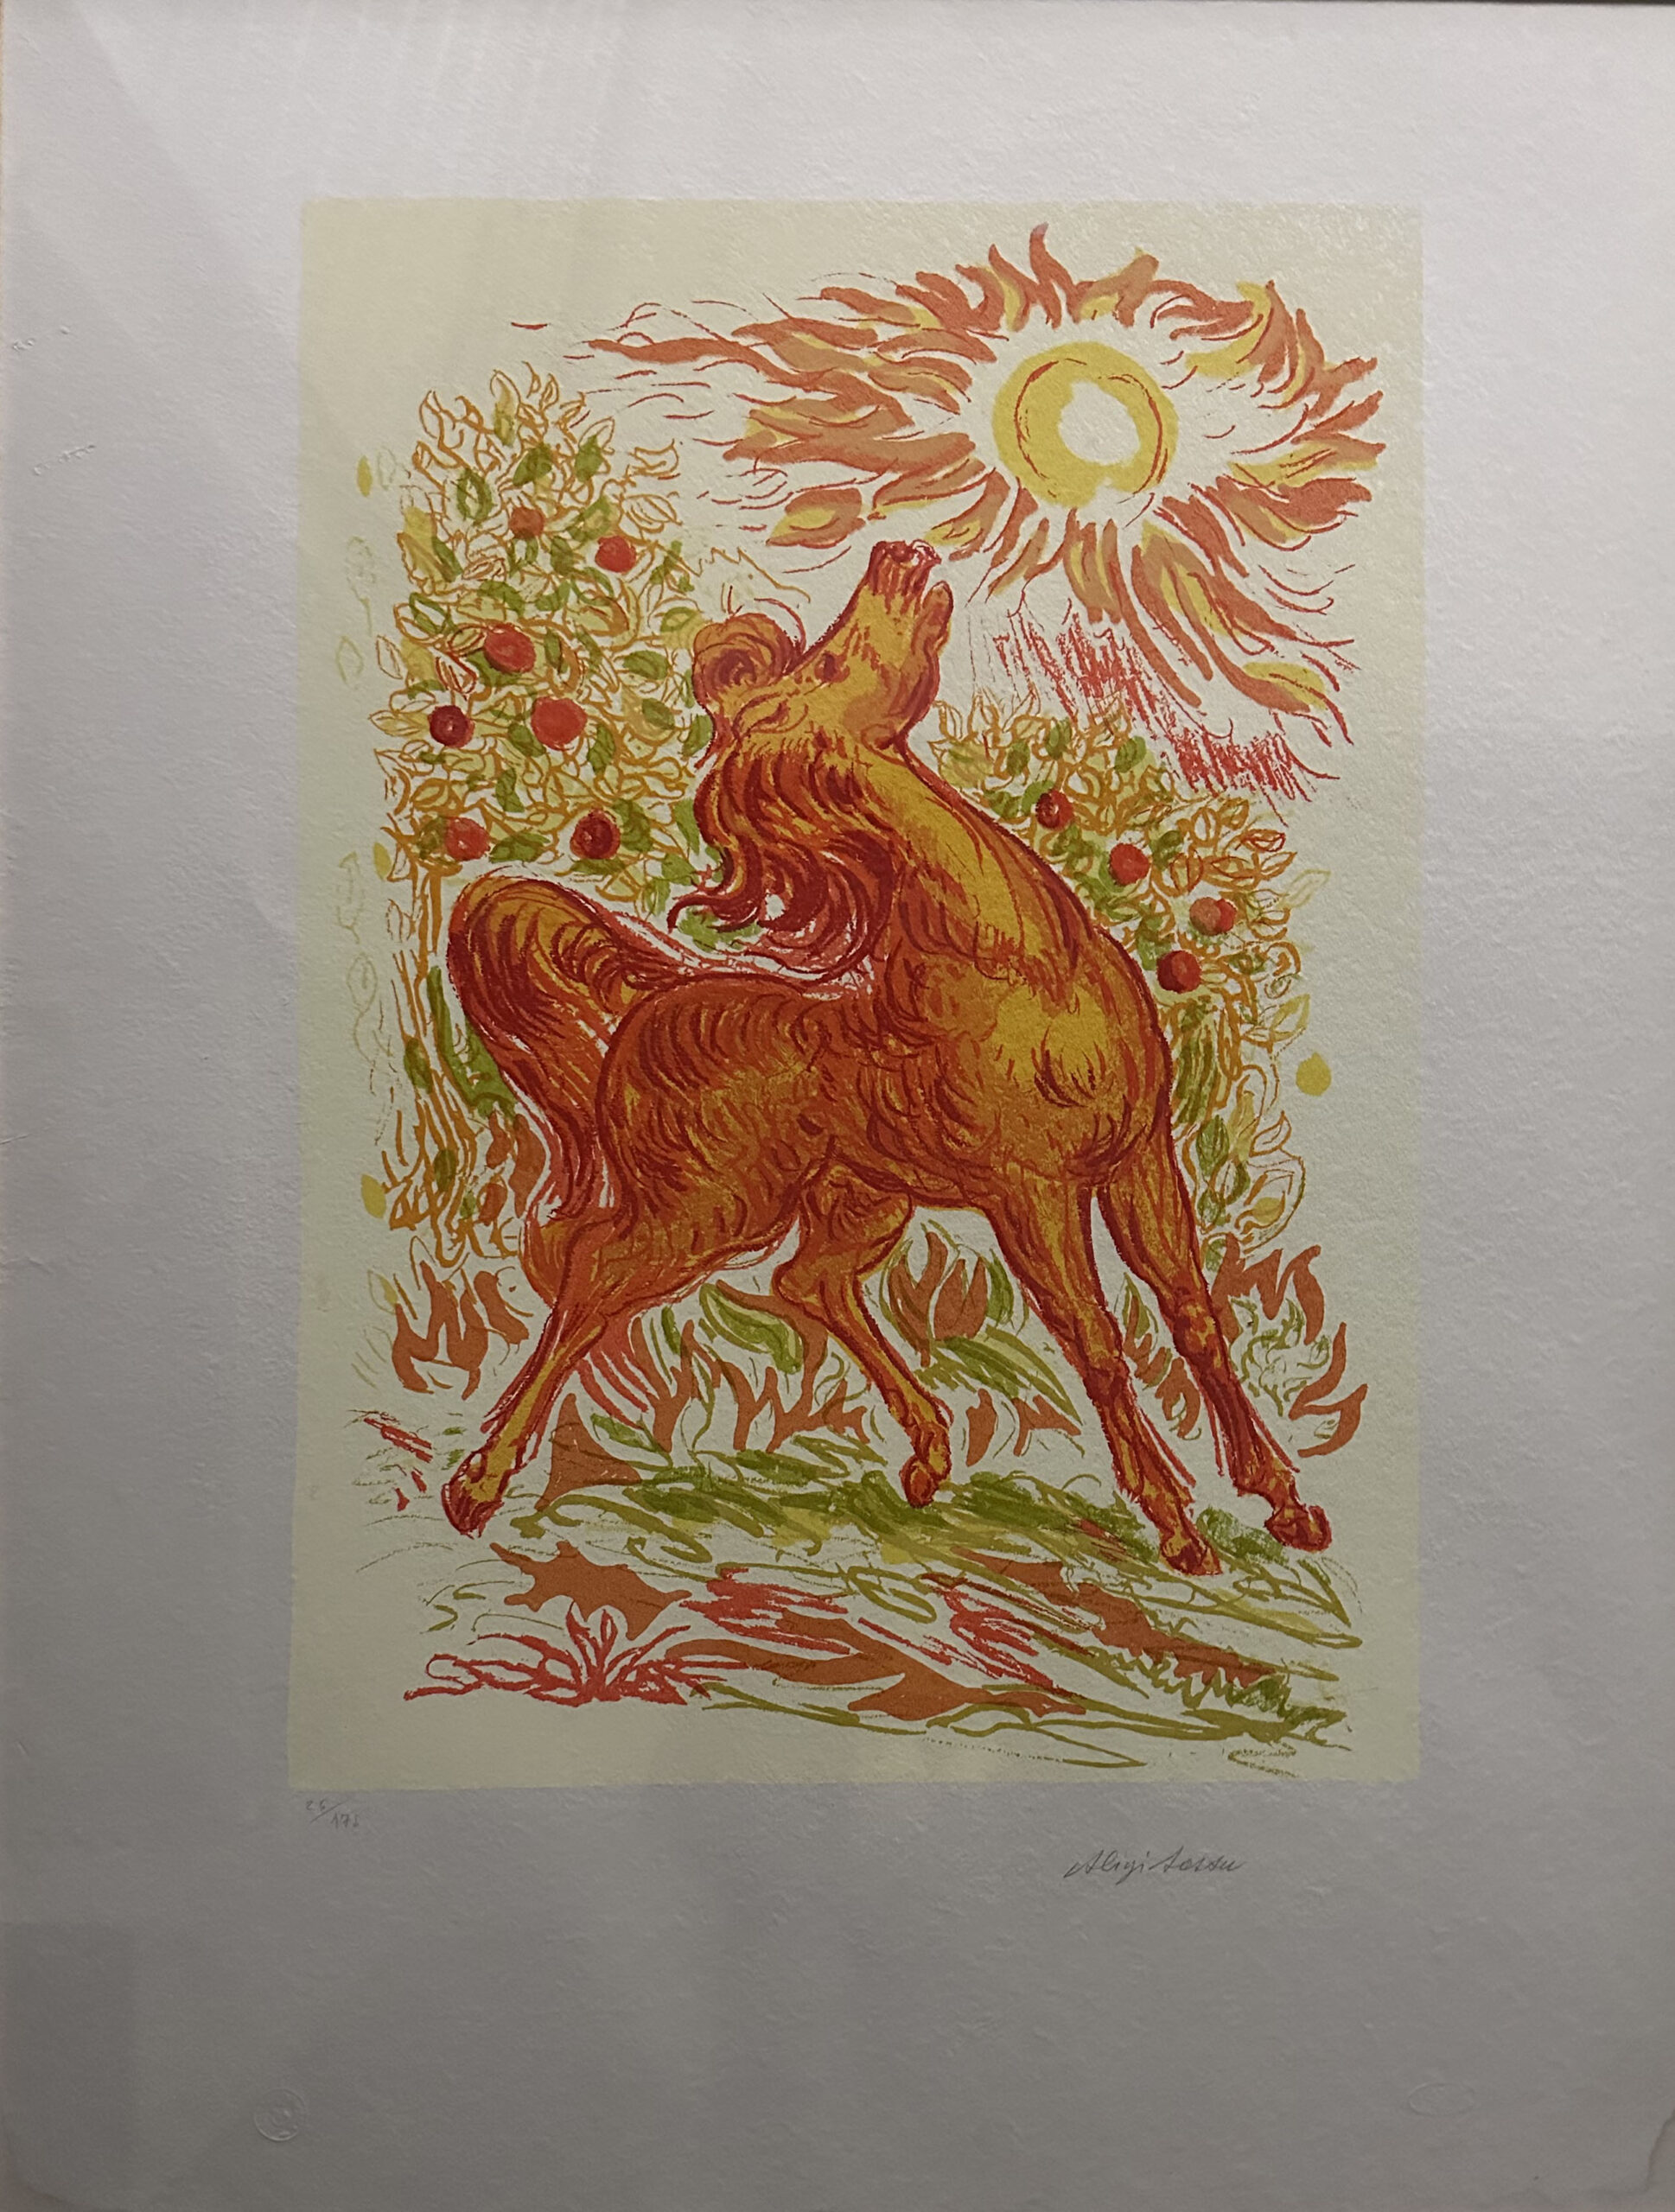 Aligi Sassu – Cavallo al sole